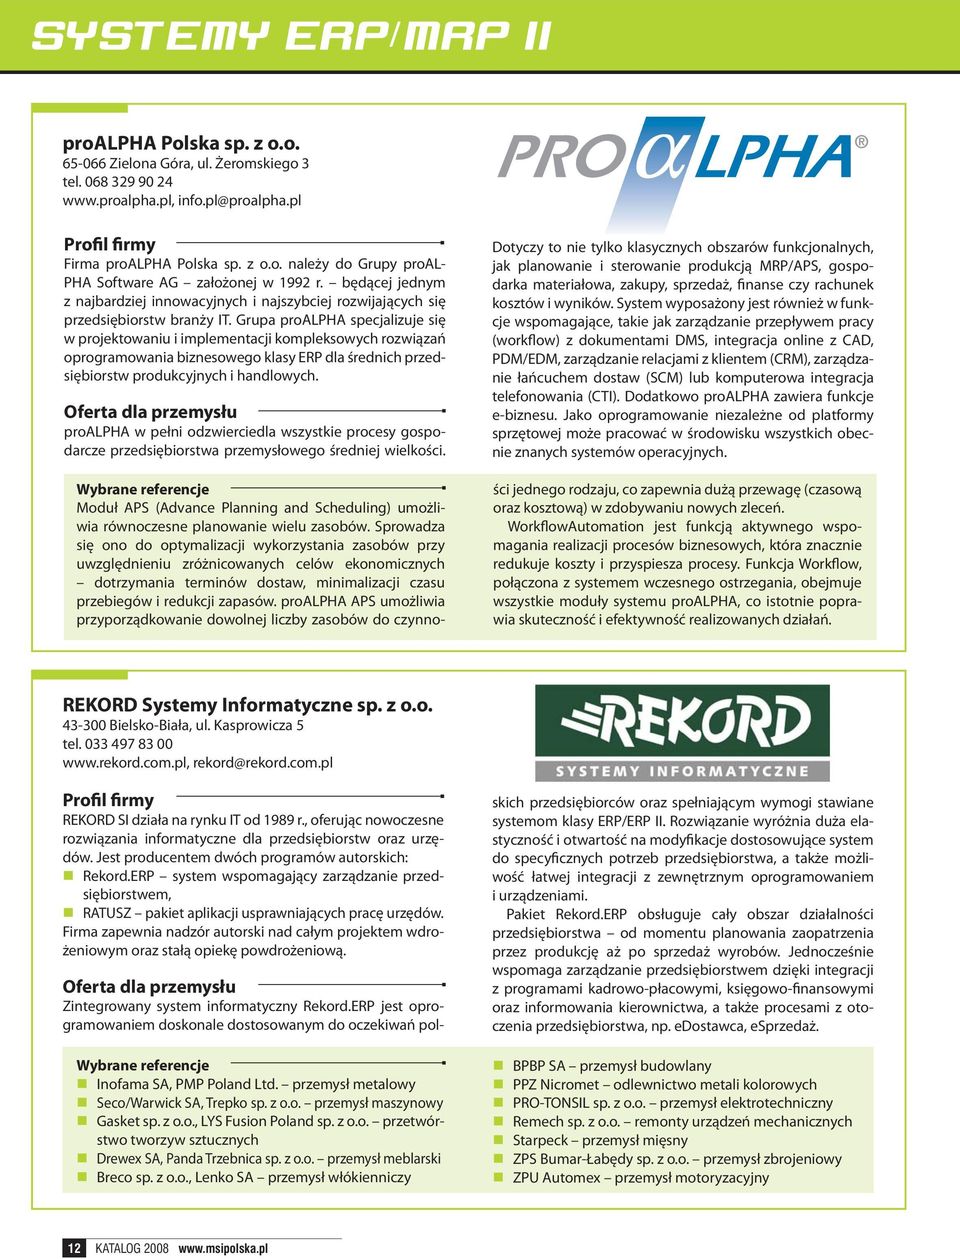 Grupa proalpha specjalizuje się w projektowaniu i implementacji kompleksowych rozwiązań oprogramowania biznesowego klasy ERP dla średnich przedsiębiorstw produkcyjnych i handlowych.